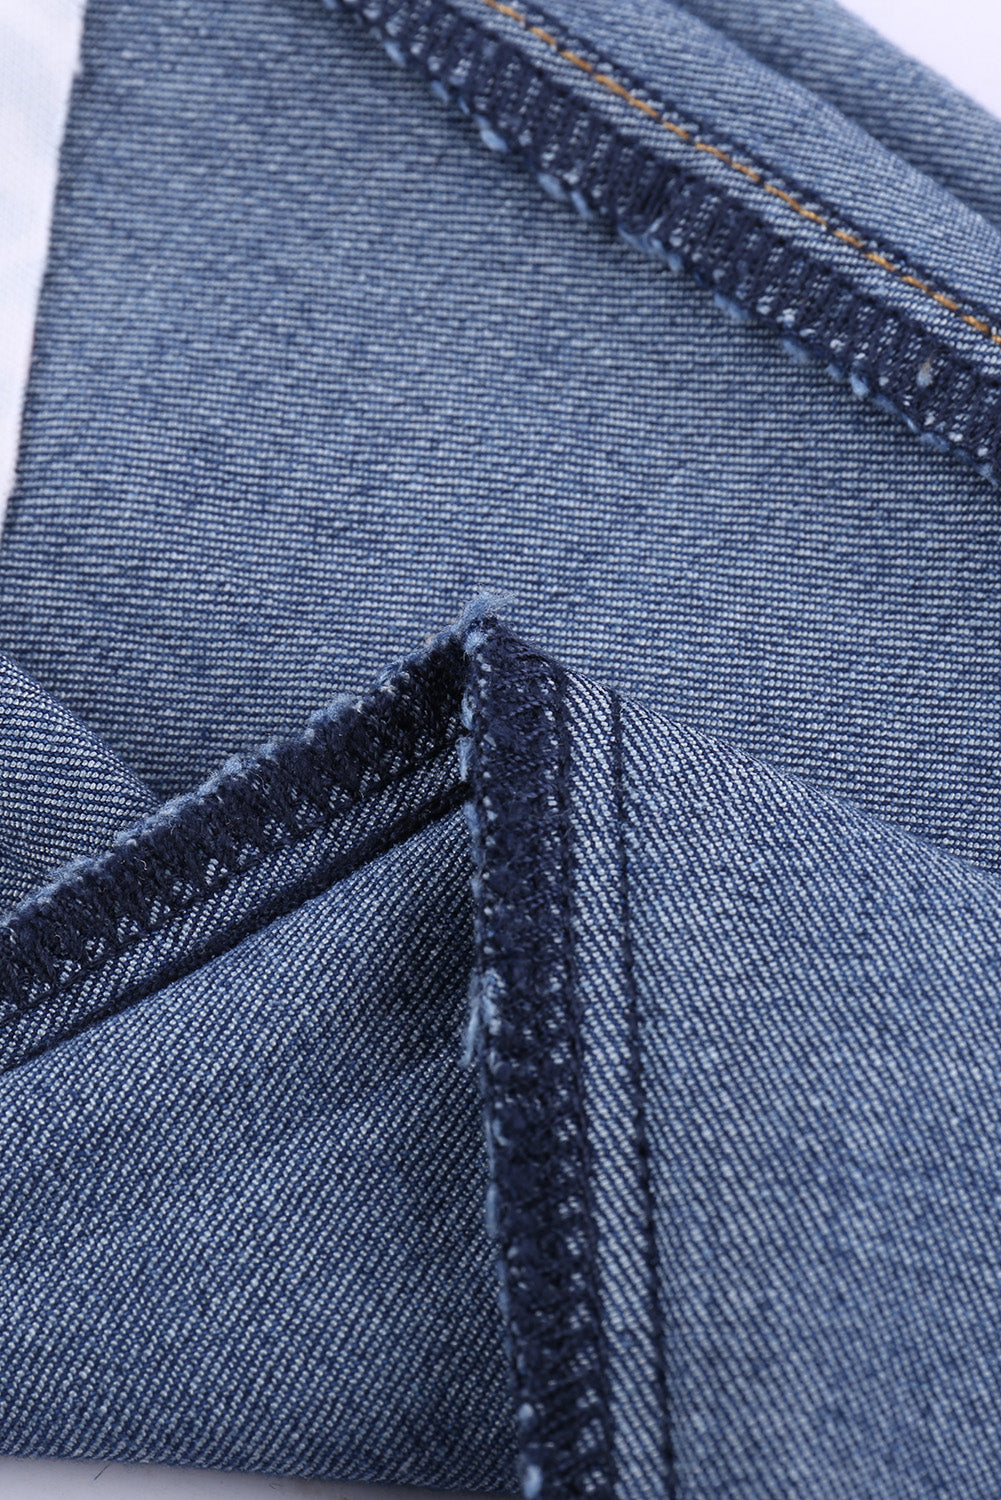 Leopard Patch Destroyed Skinny Blue Jeans Jeans JT's Designer Fashion